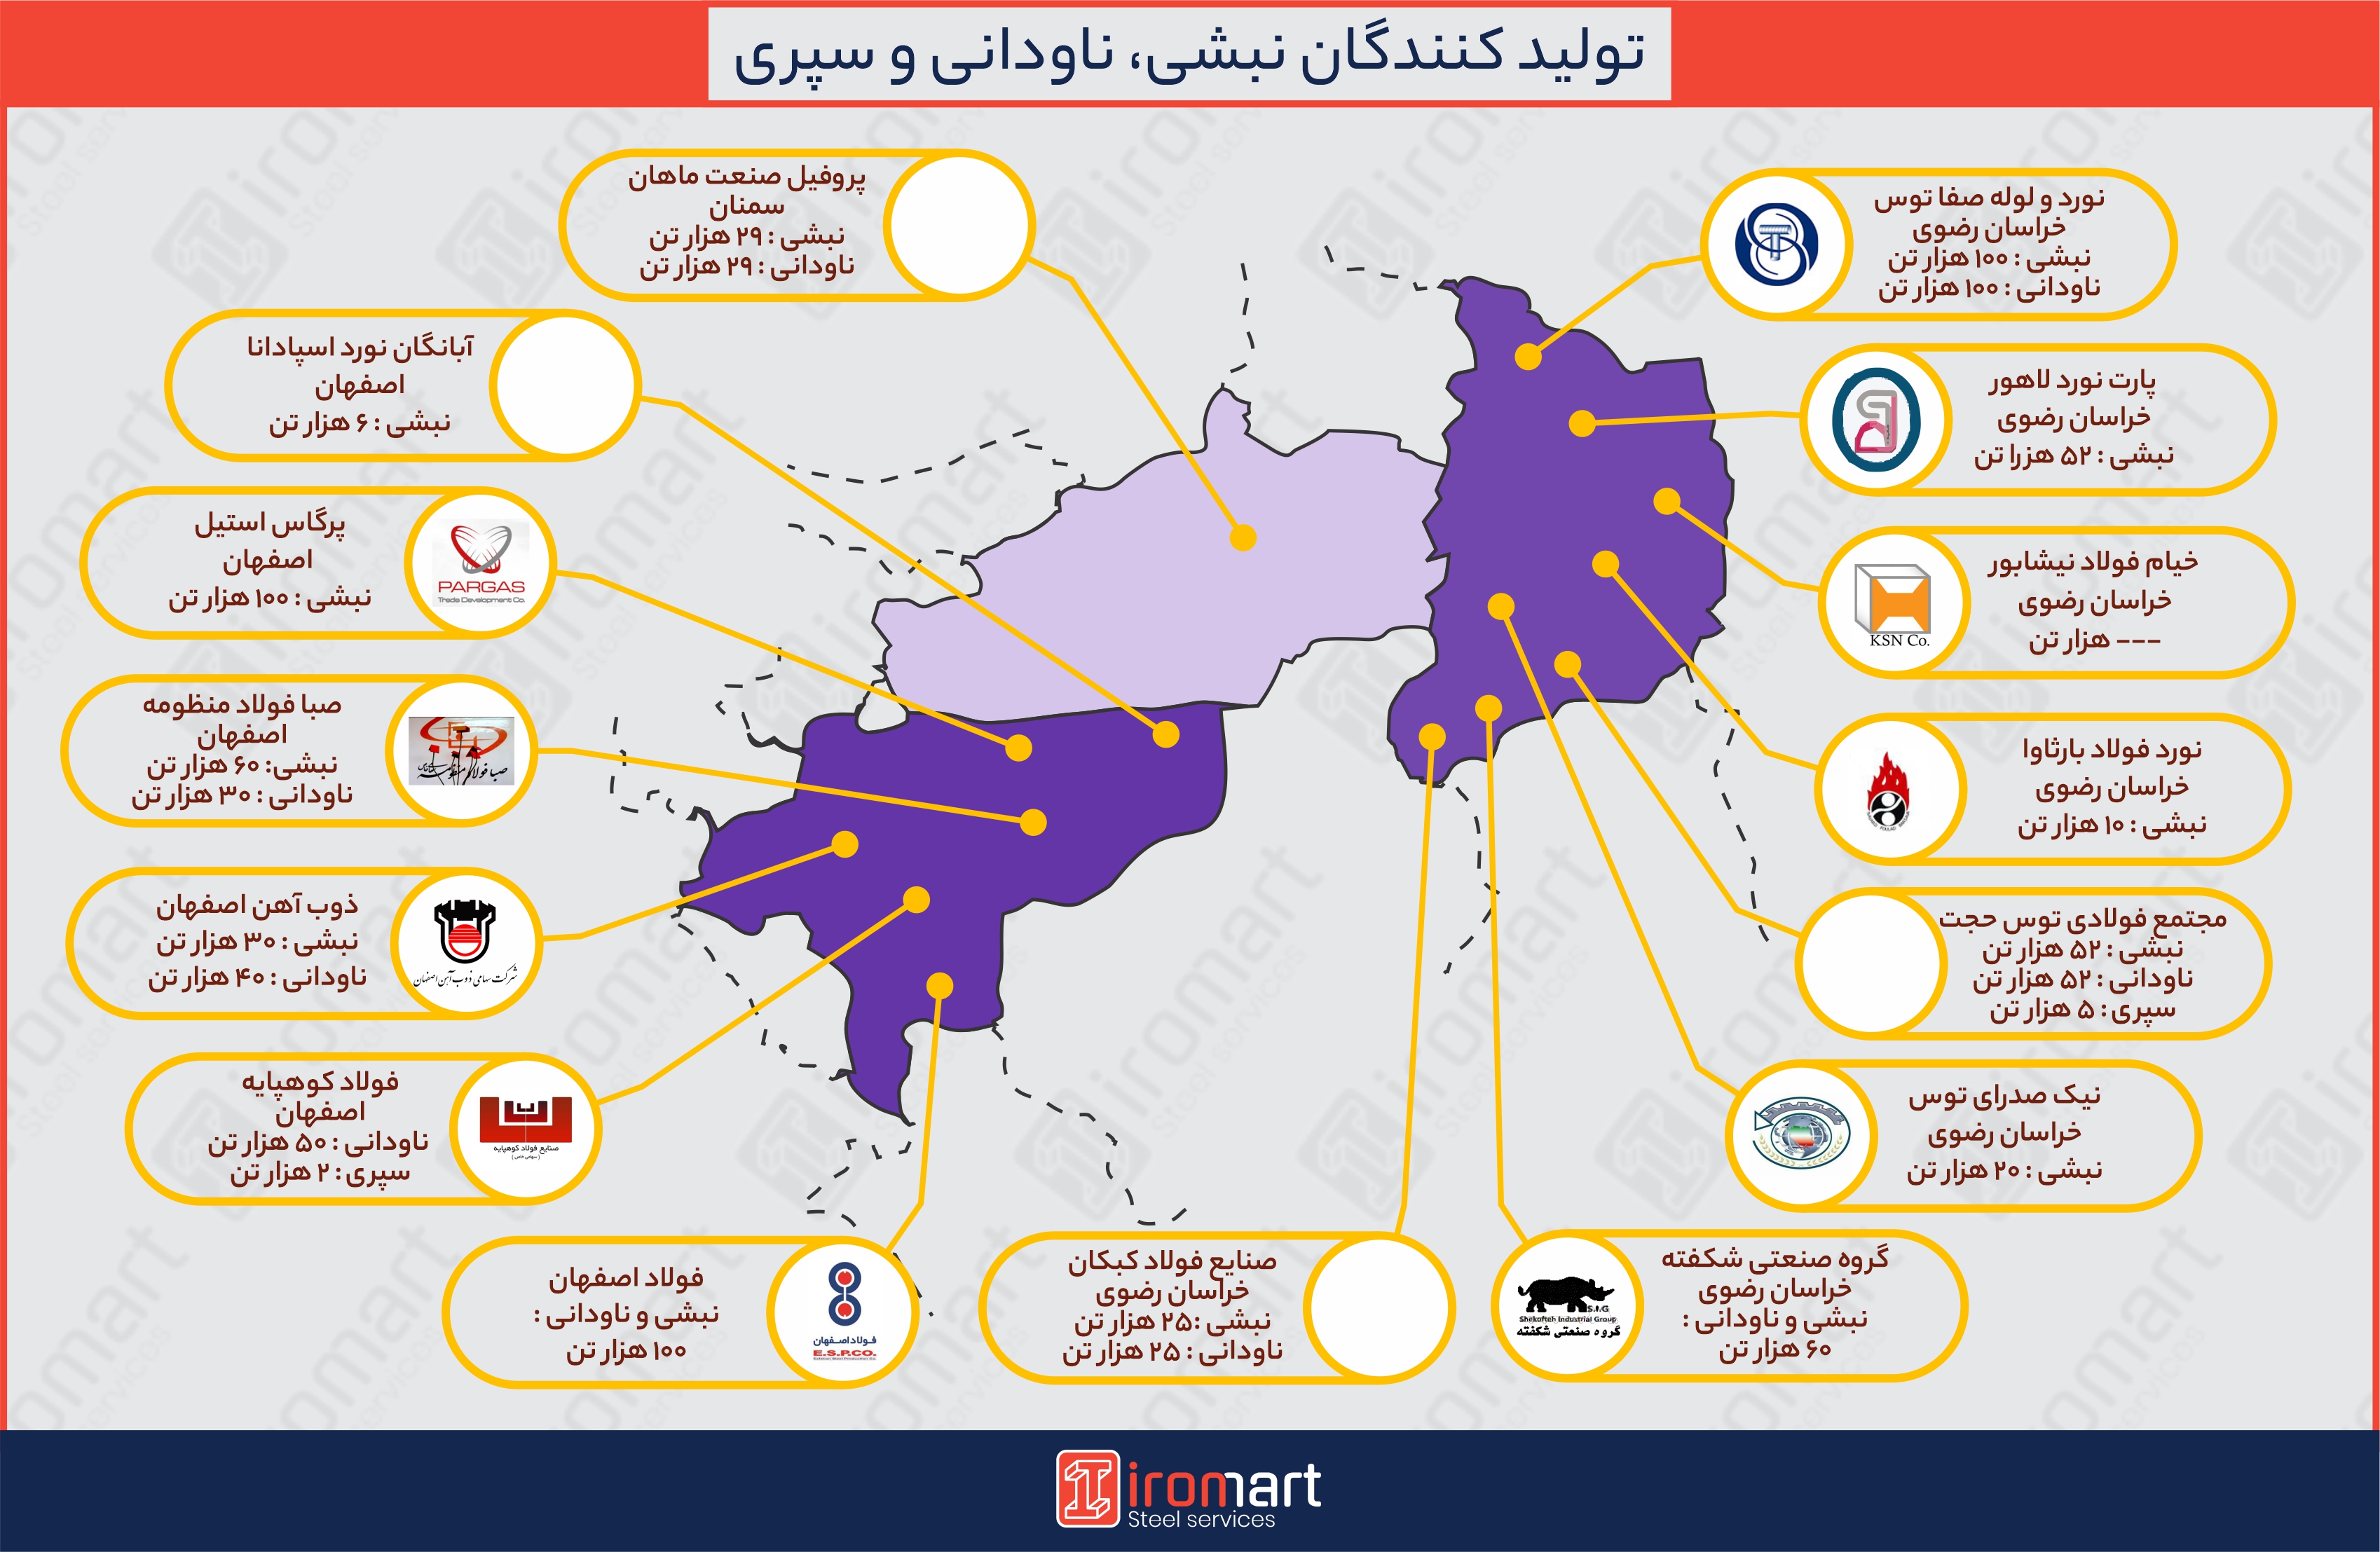  تولید کنندگان نبشی، ناودانی و سپری در ایران